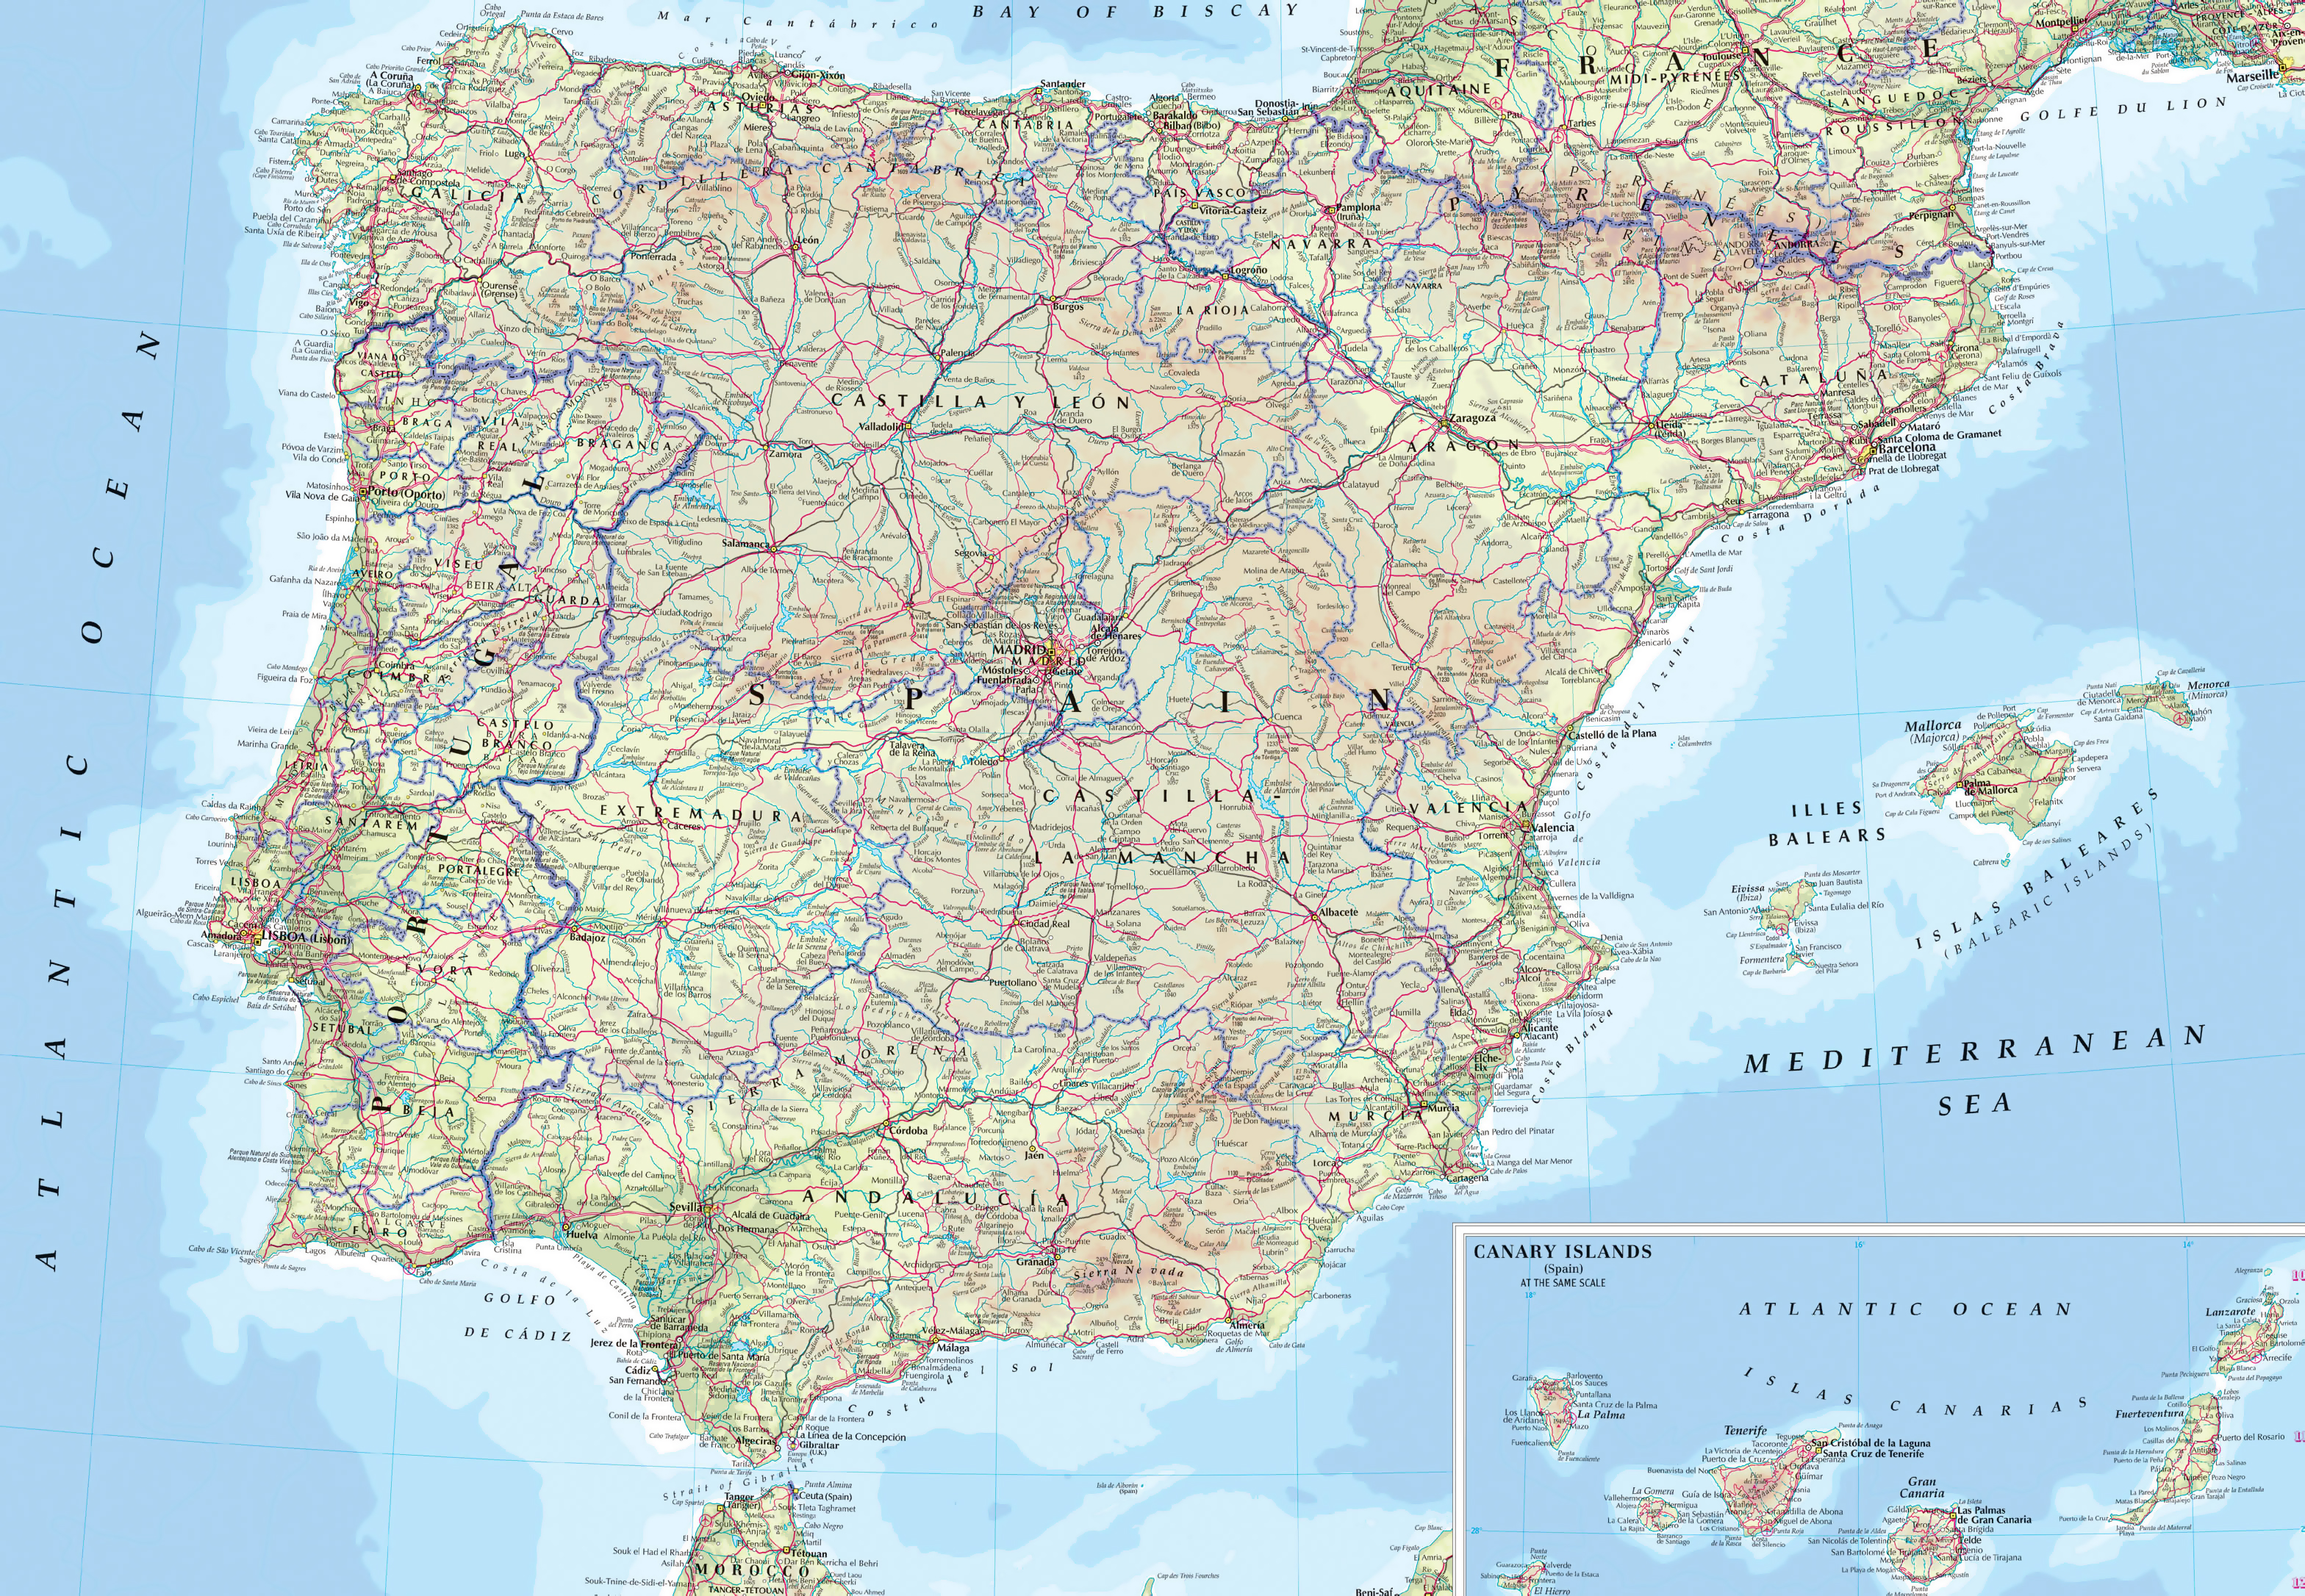 Atlas/Mapa de carreteras España y Portugal 2024